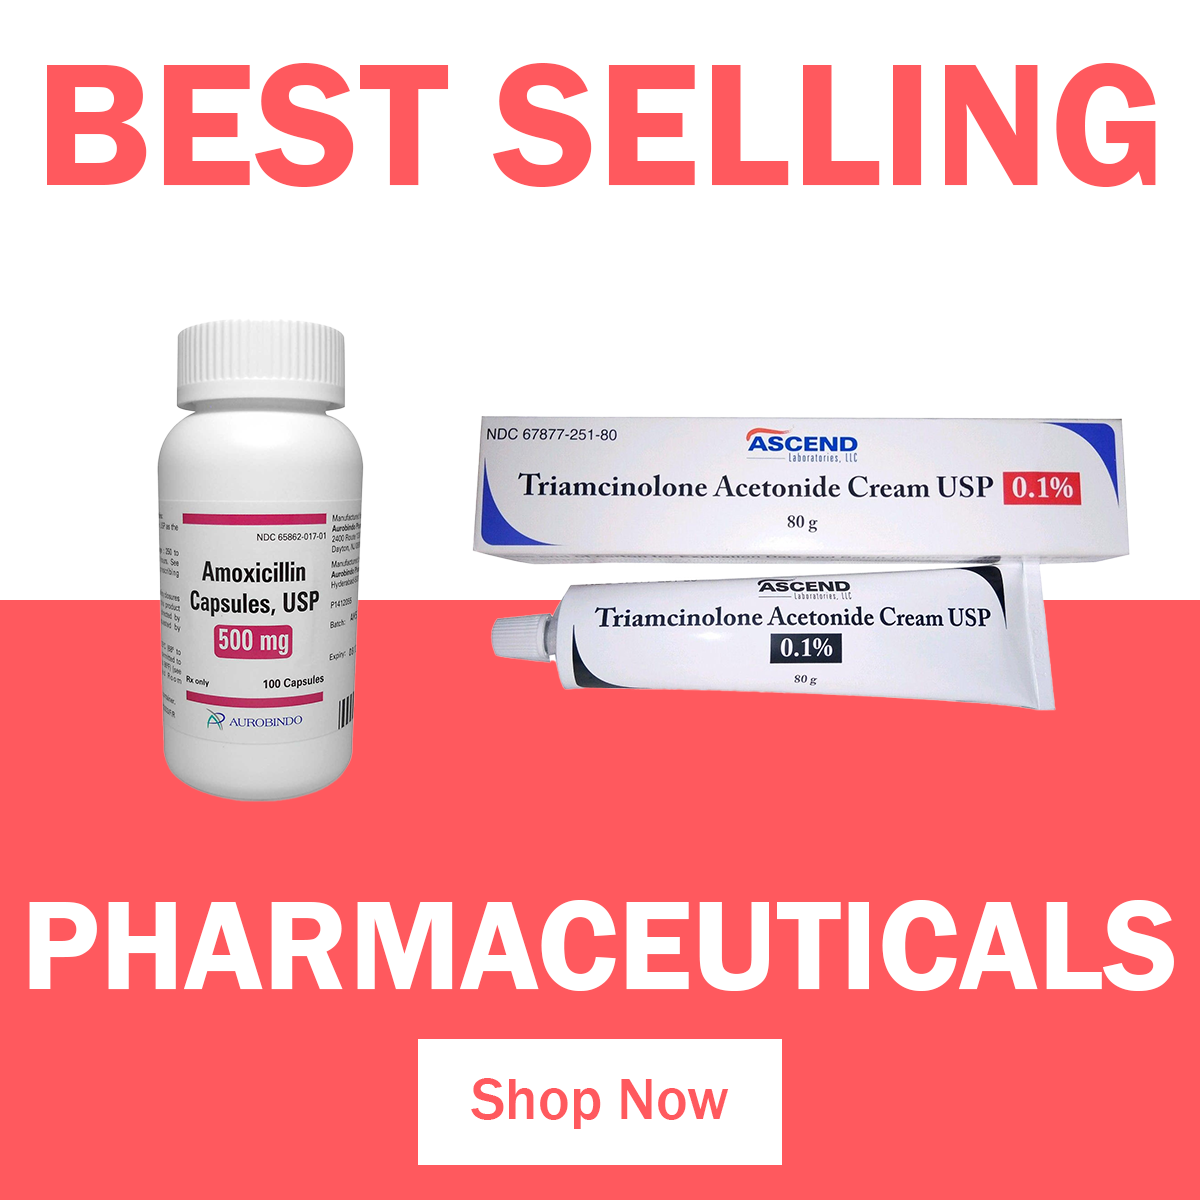 Top Pharmaceuticals